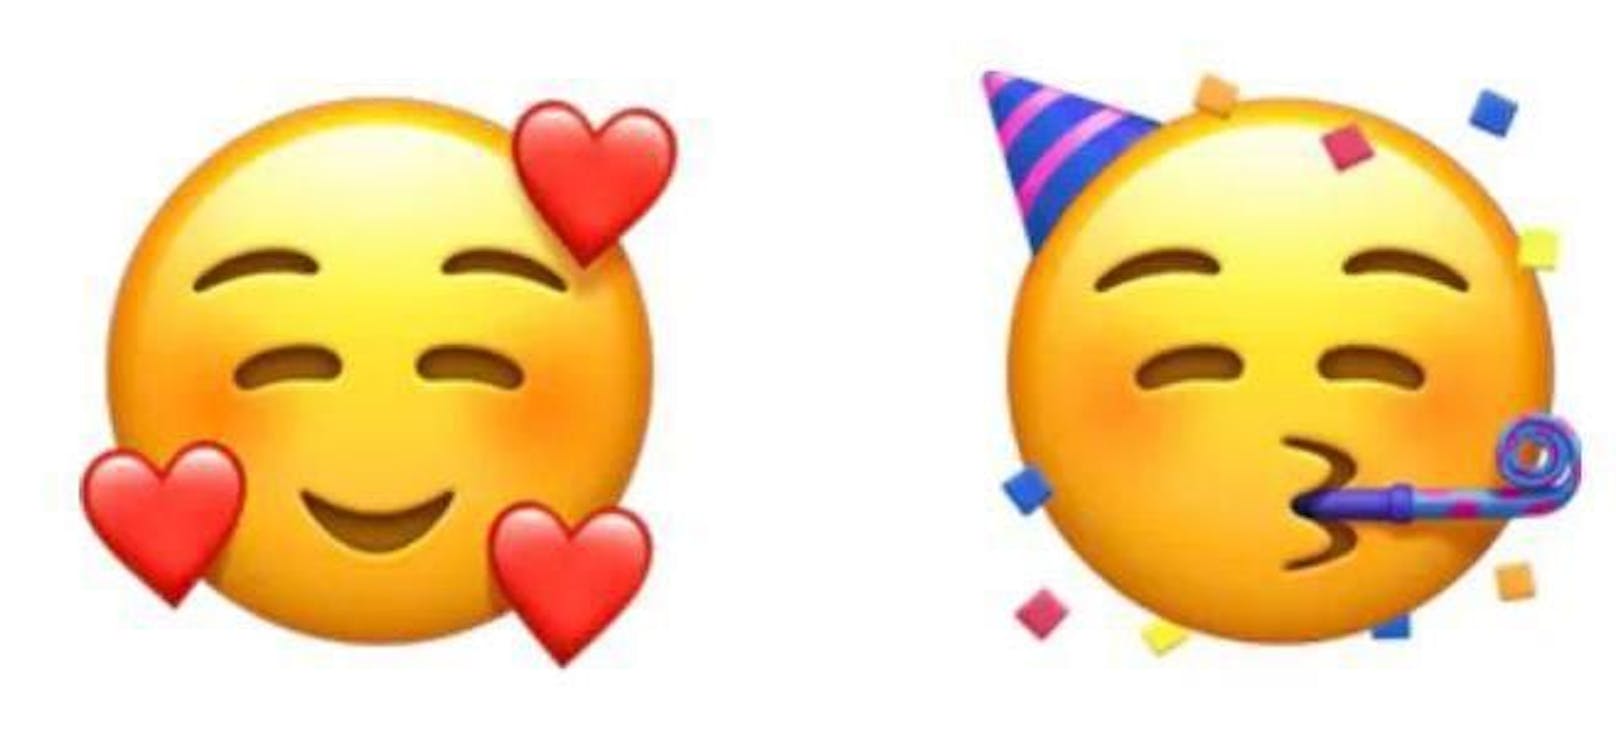 Auch wenig Missverständnisse gibt es bei diesen beiden Emojis. Sie werden von allen Personen als positiv eingestuft.